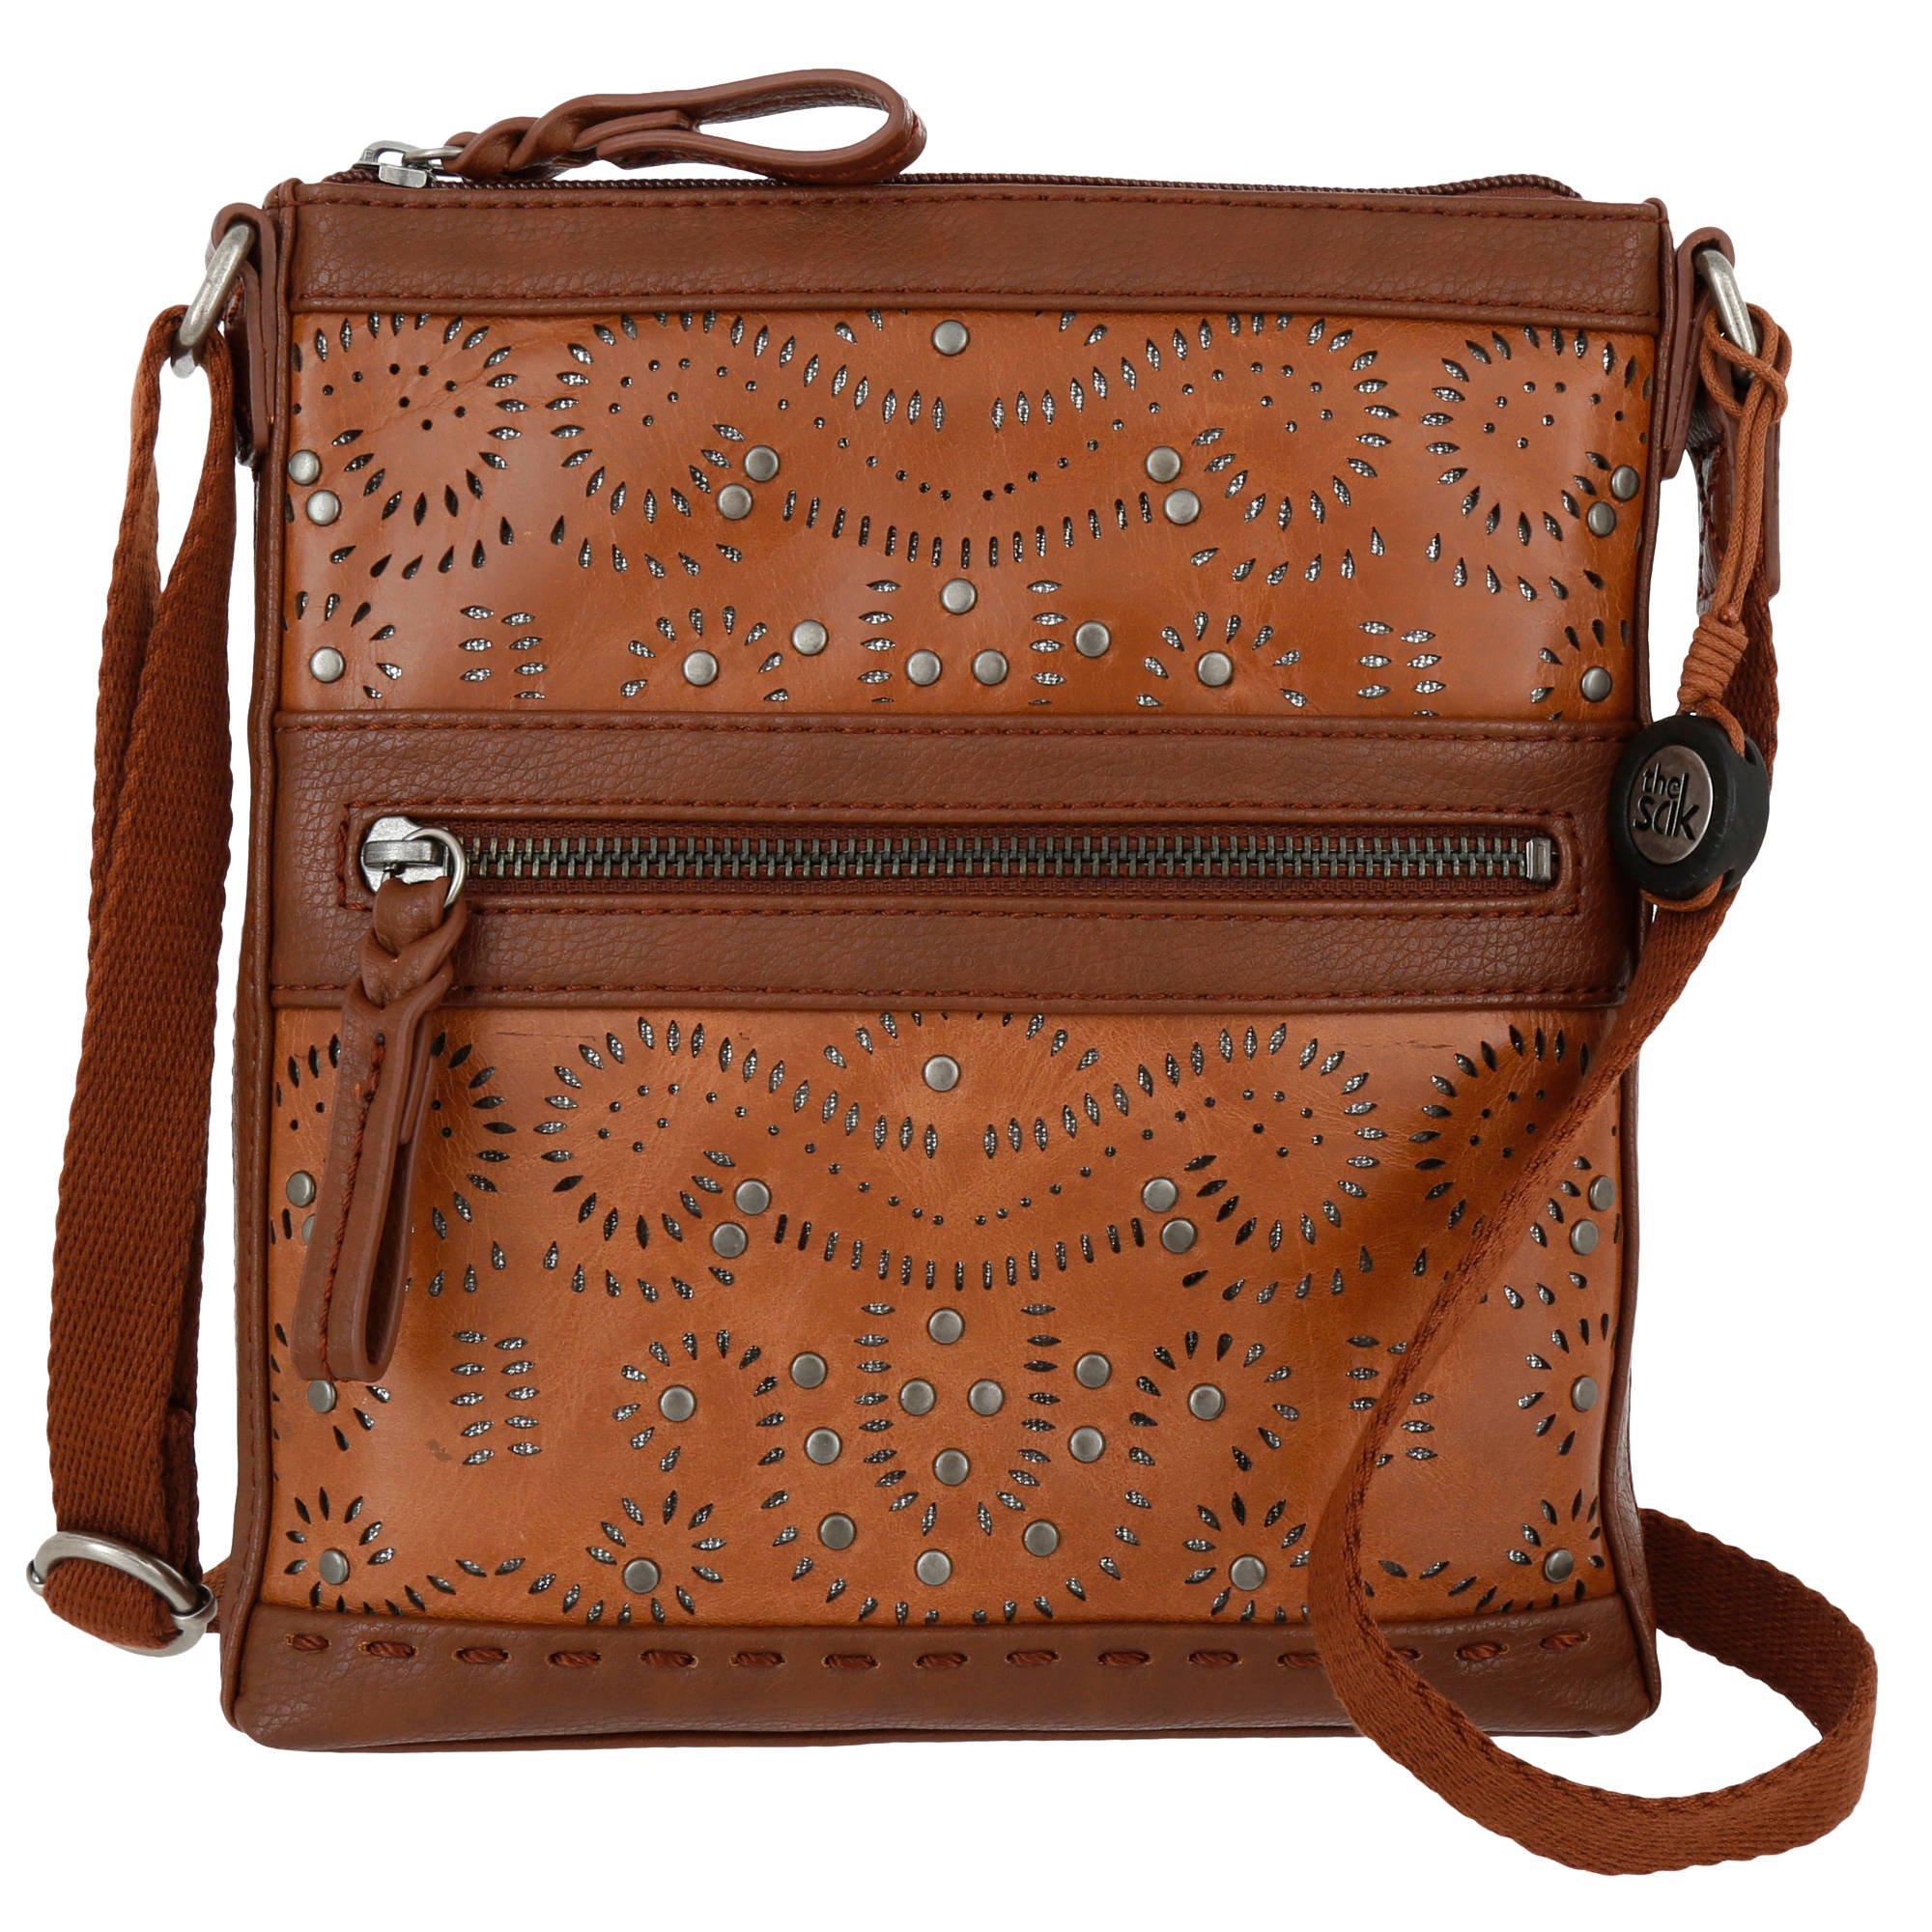 Handbags, Purses, & Wallets | Burkes Outlet